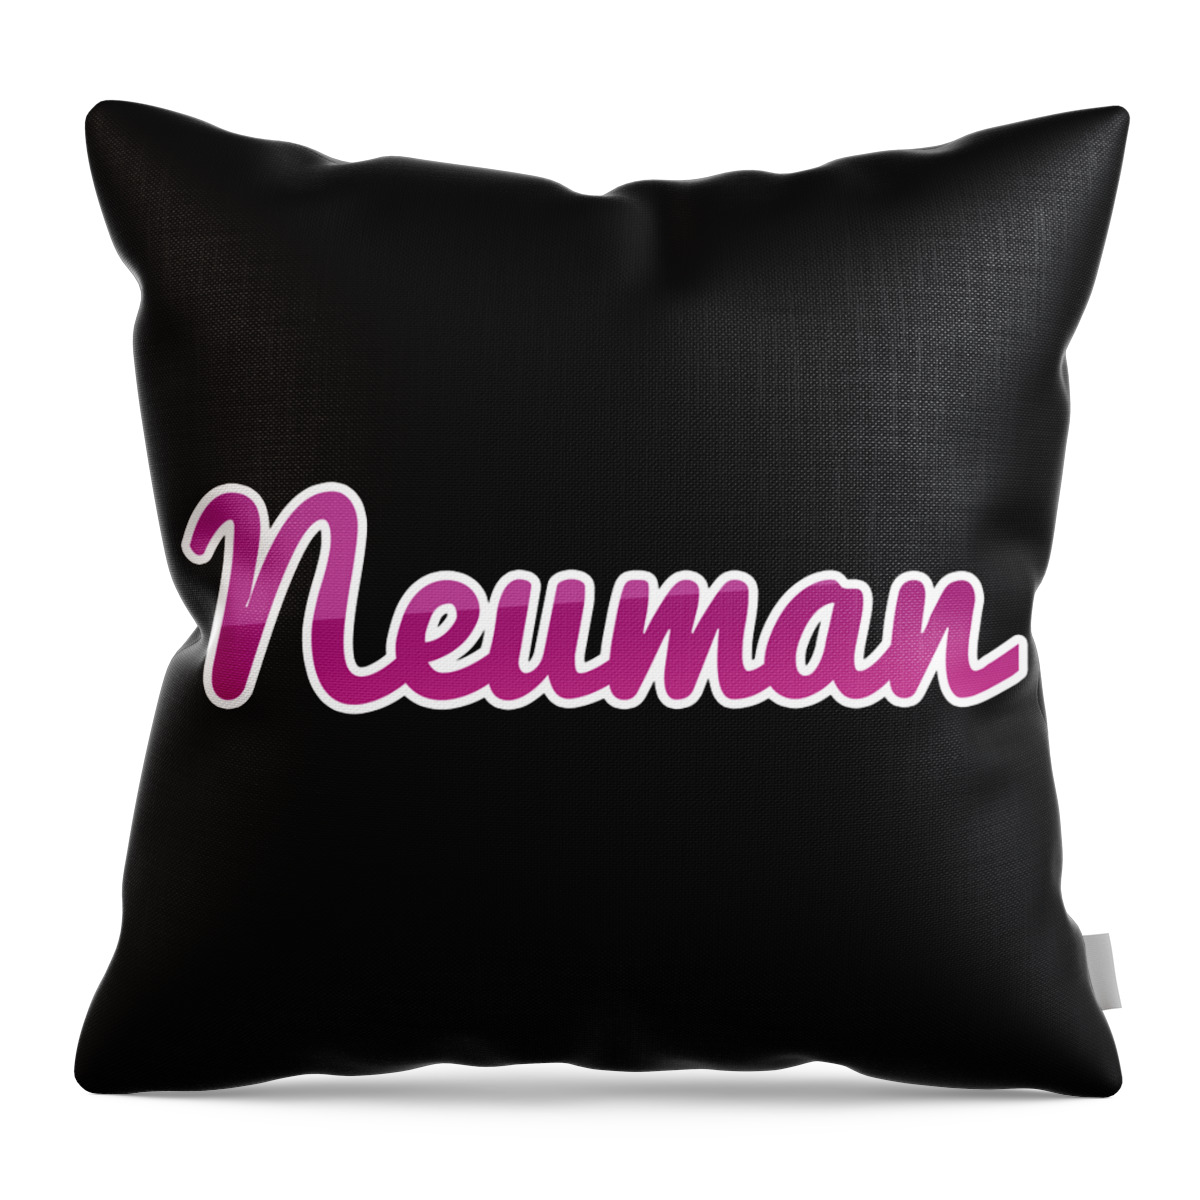 Neuman Throw Pillow featuring the digital art Neuman #Neuman by TintoDesigns